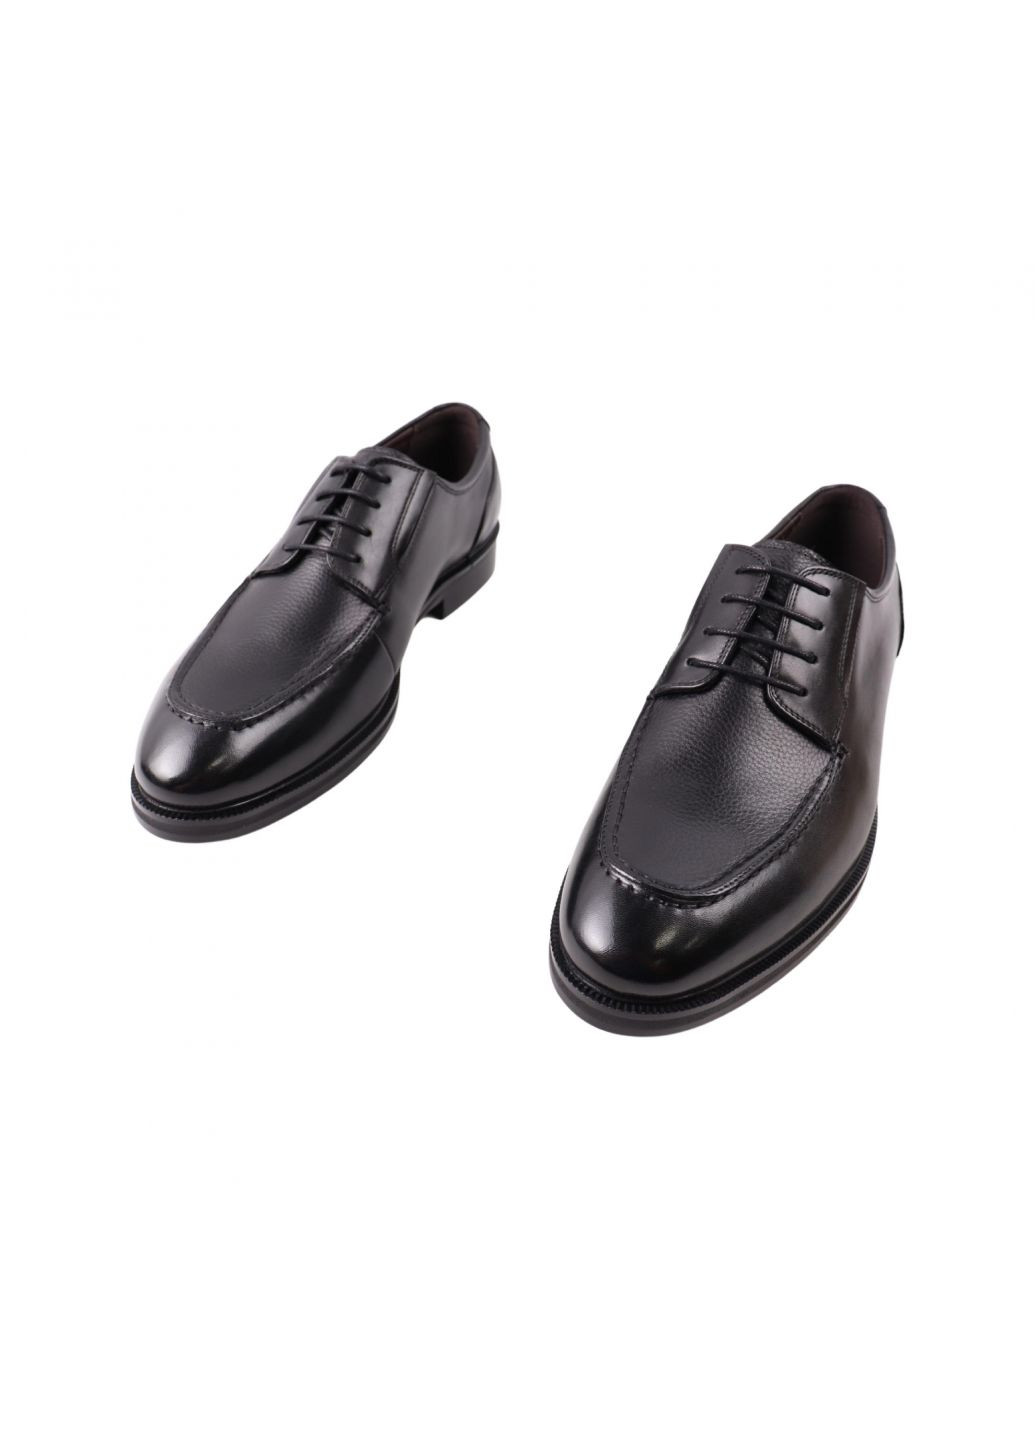 Туфлі чоловічі Lido Marinozi чорні натуральна шкіра Lido Marinozzi 310-23dt (262896860)